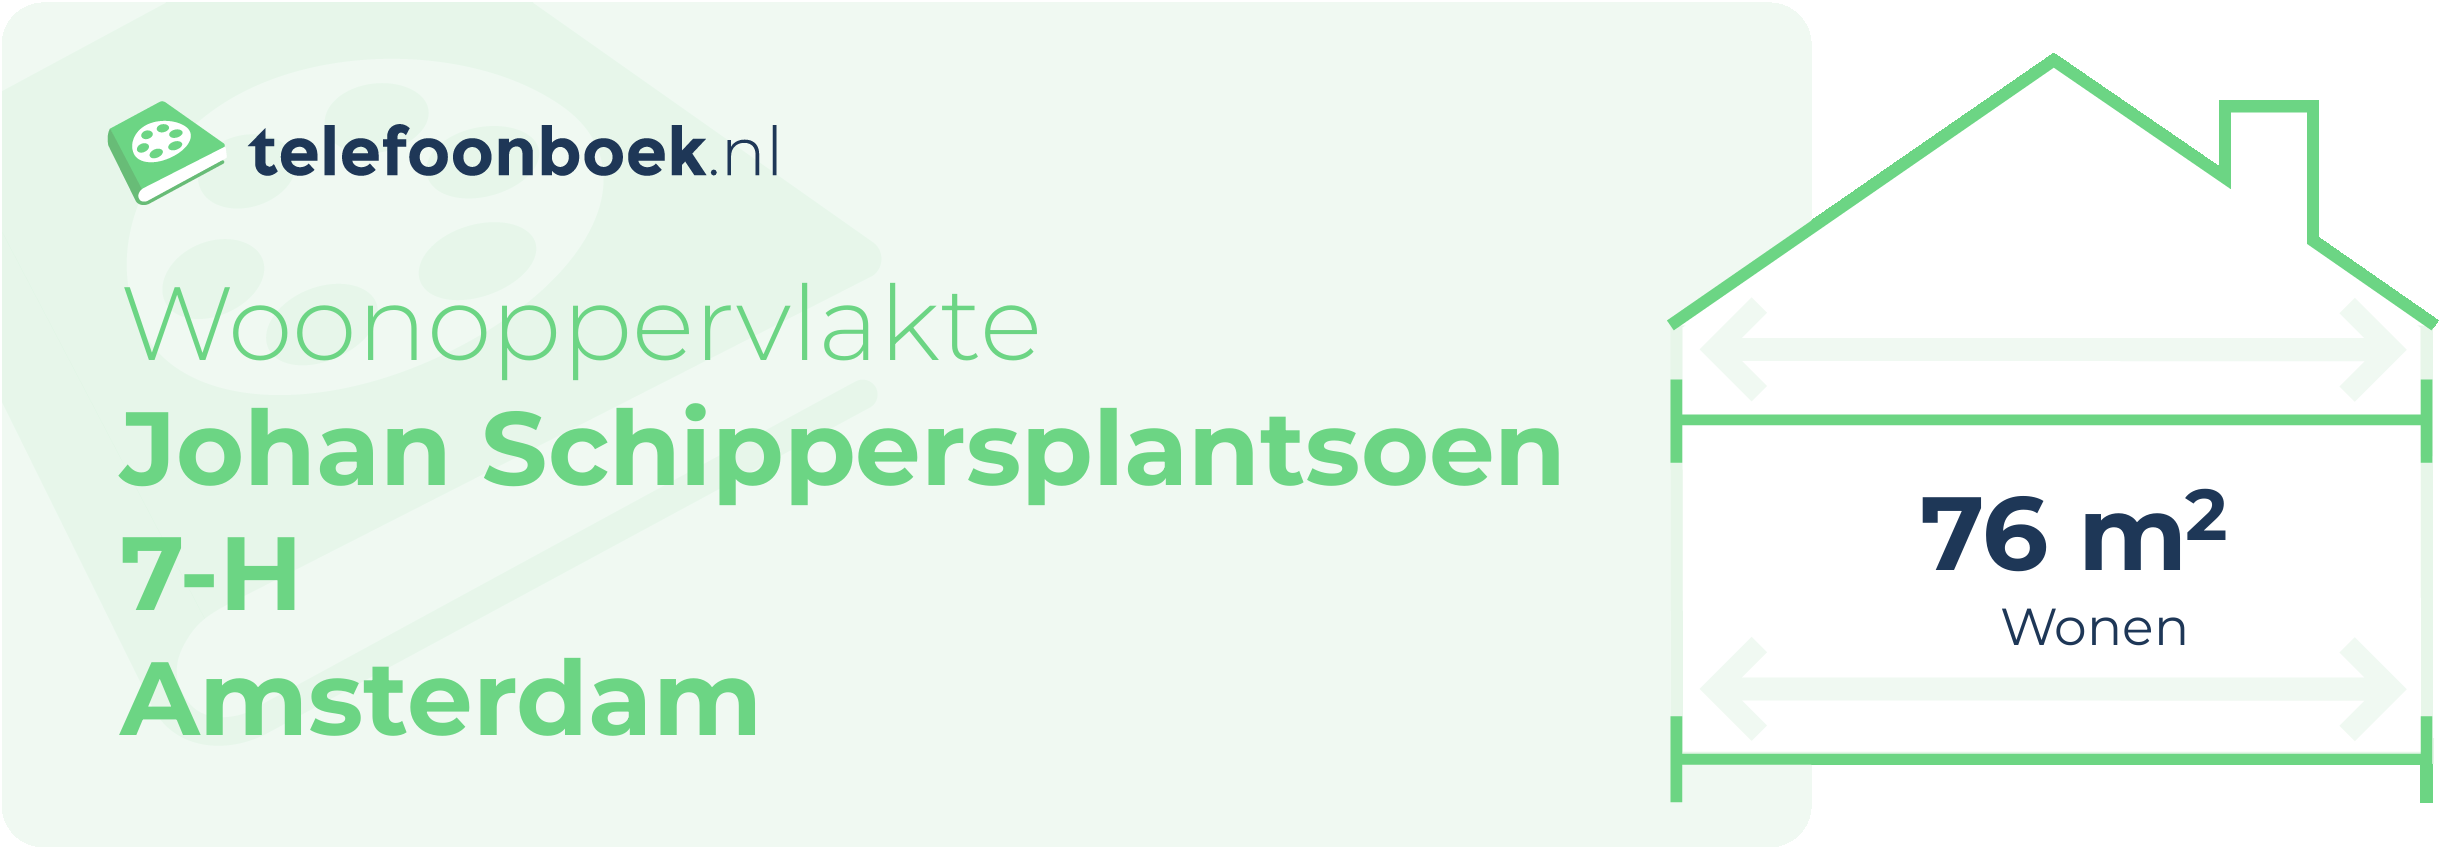 Woonoppervlakte Johan Schippersplantsoen 7-H Amsterdam